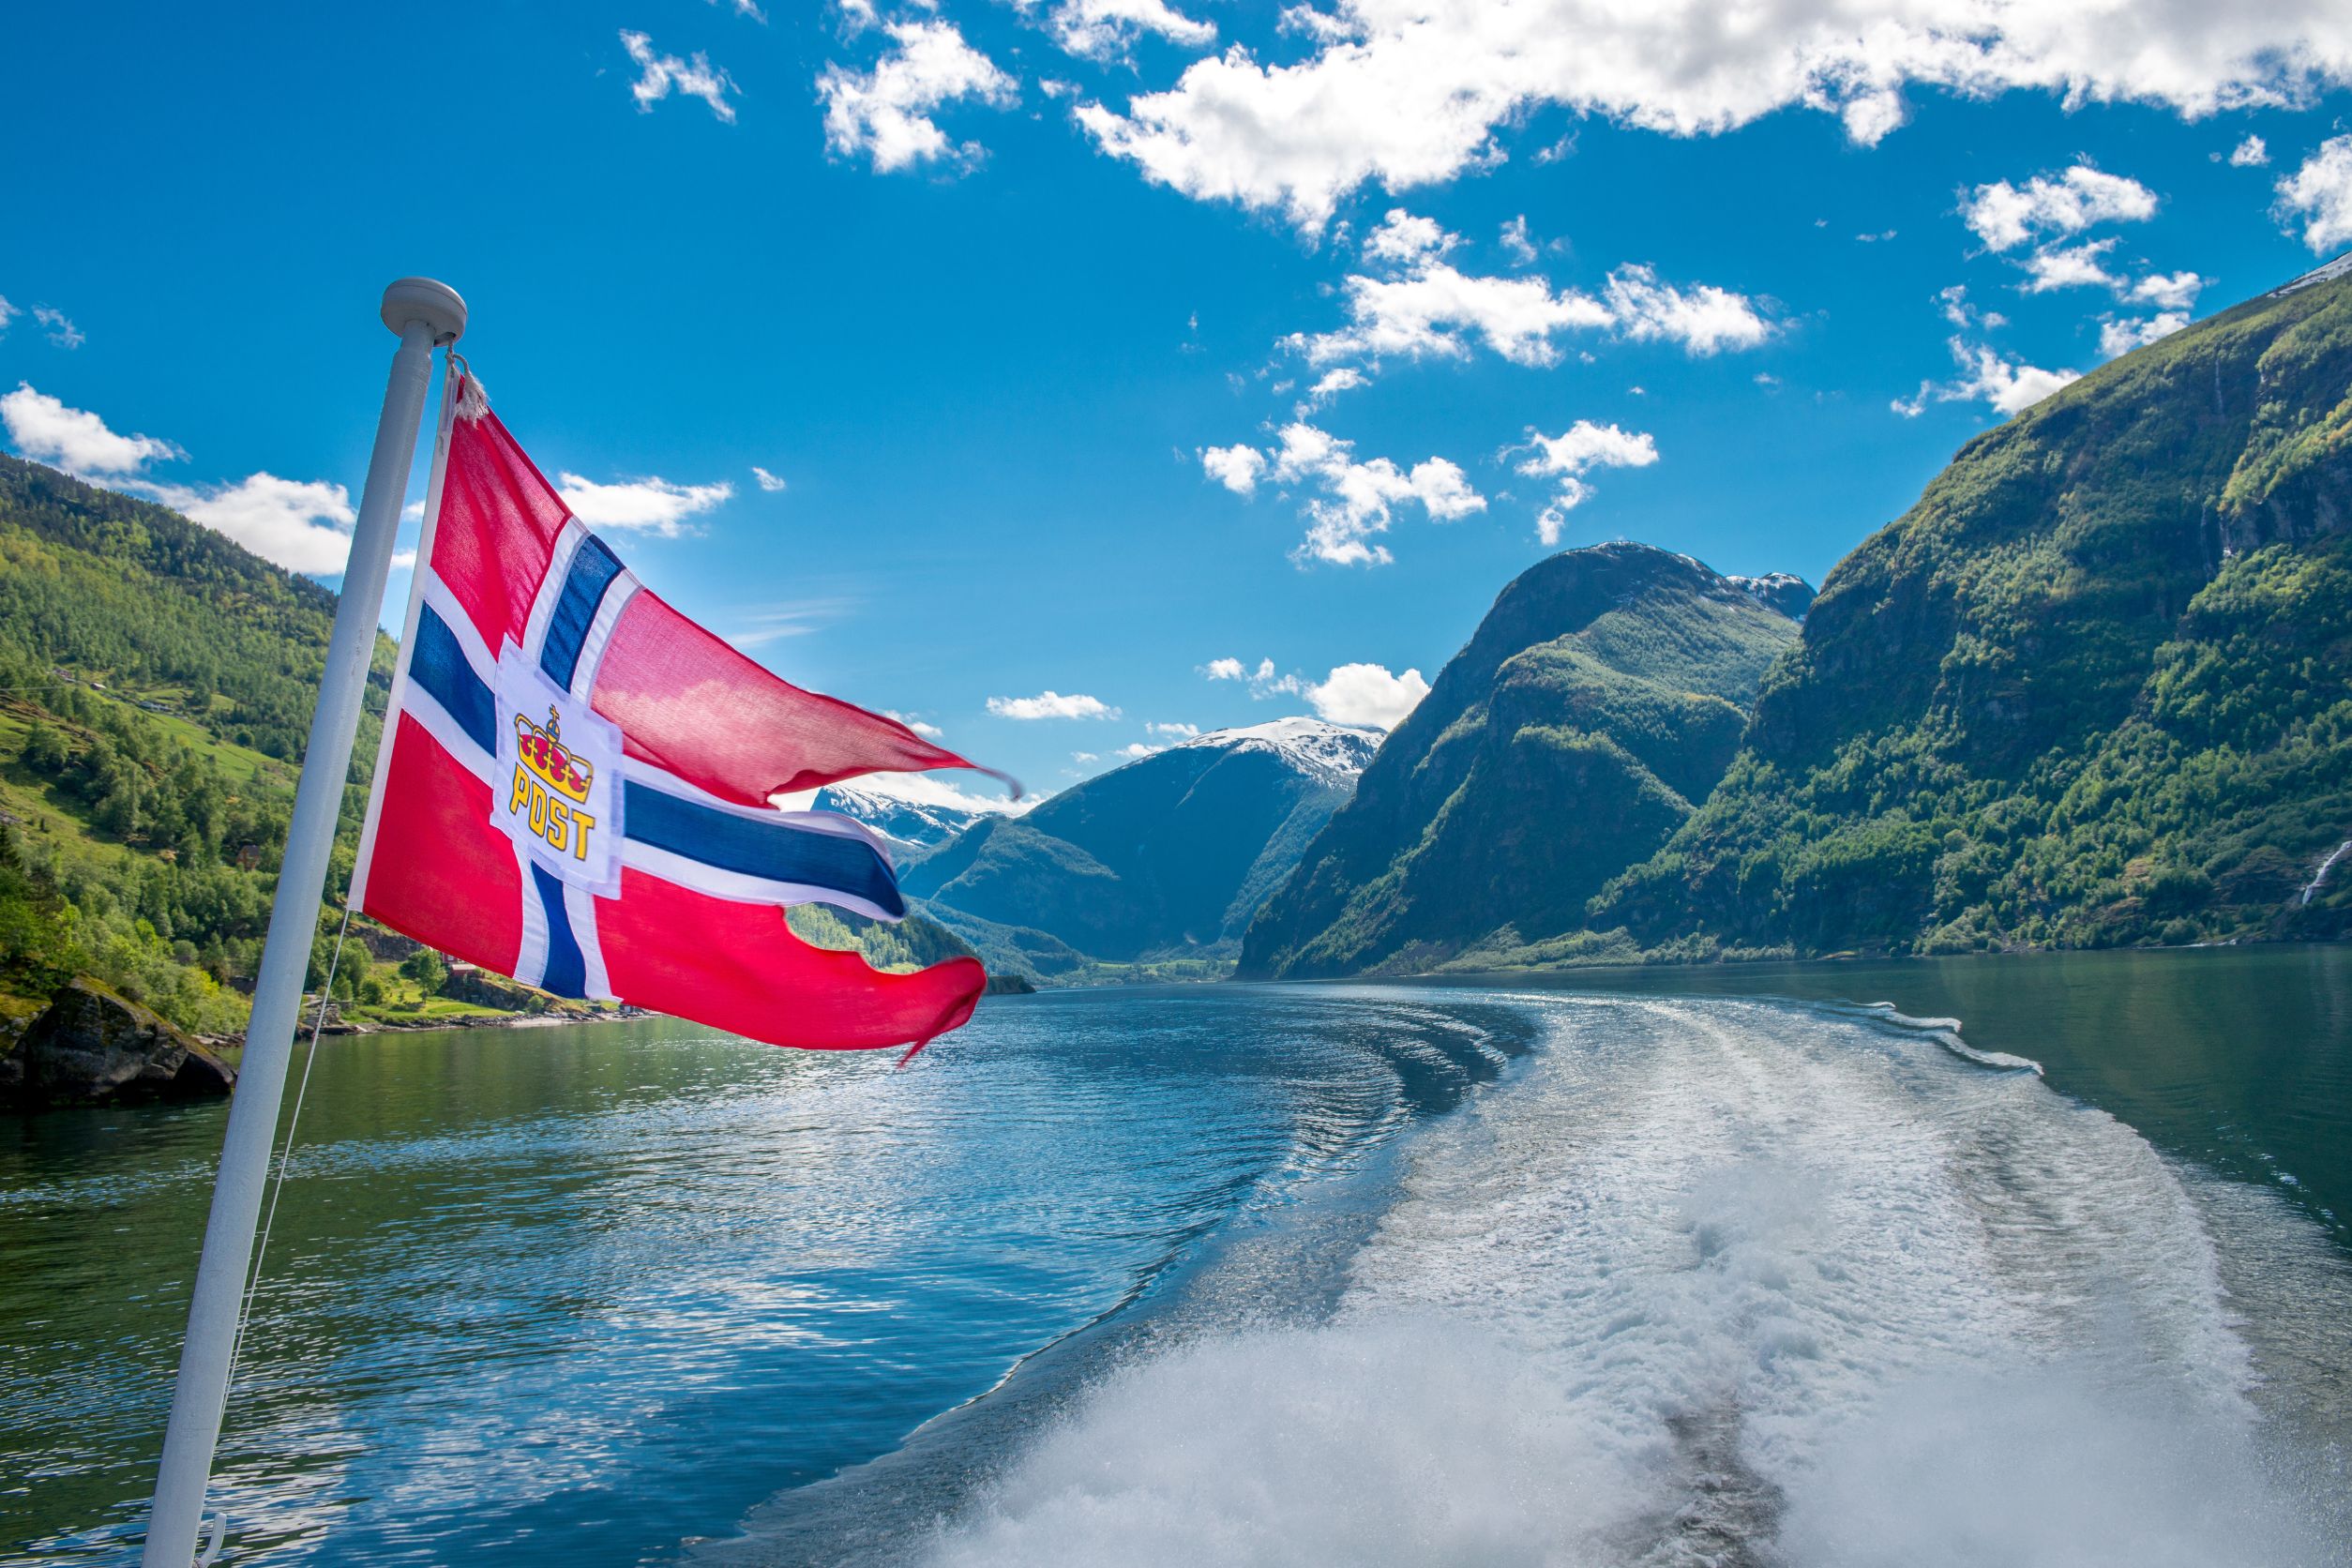 Cruise Through the Norwegian Fjords